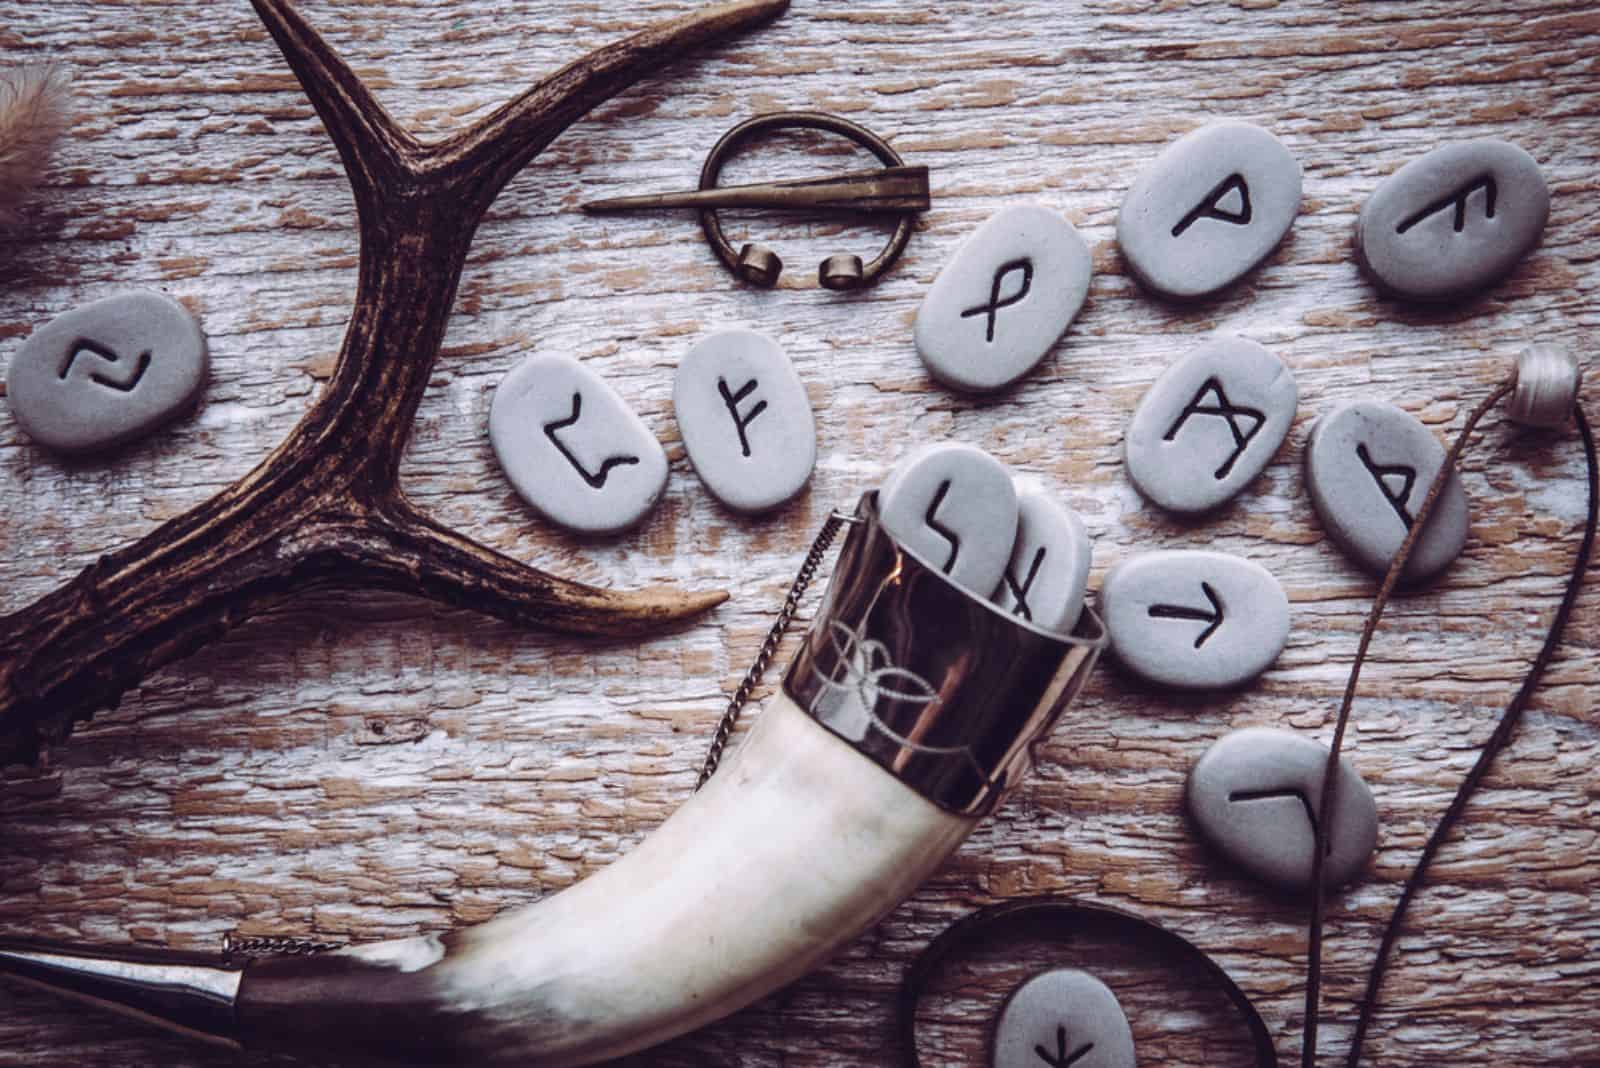 Vue à plat des pierres runiques avec divers objets de style de l'ère viking